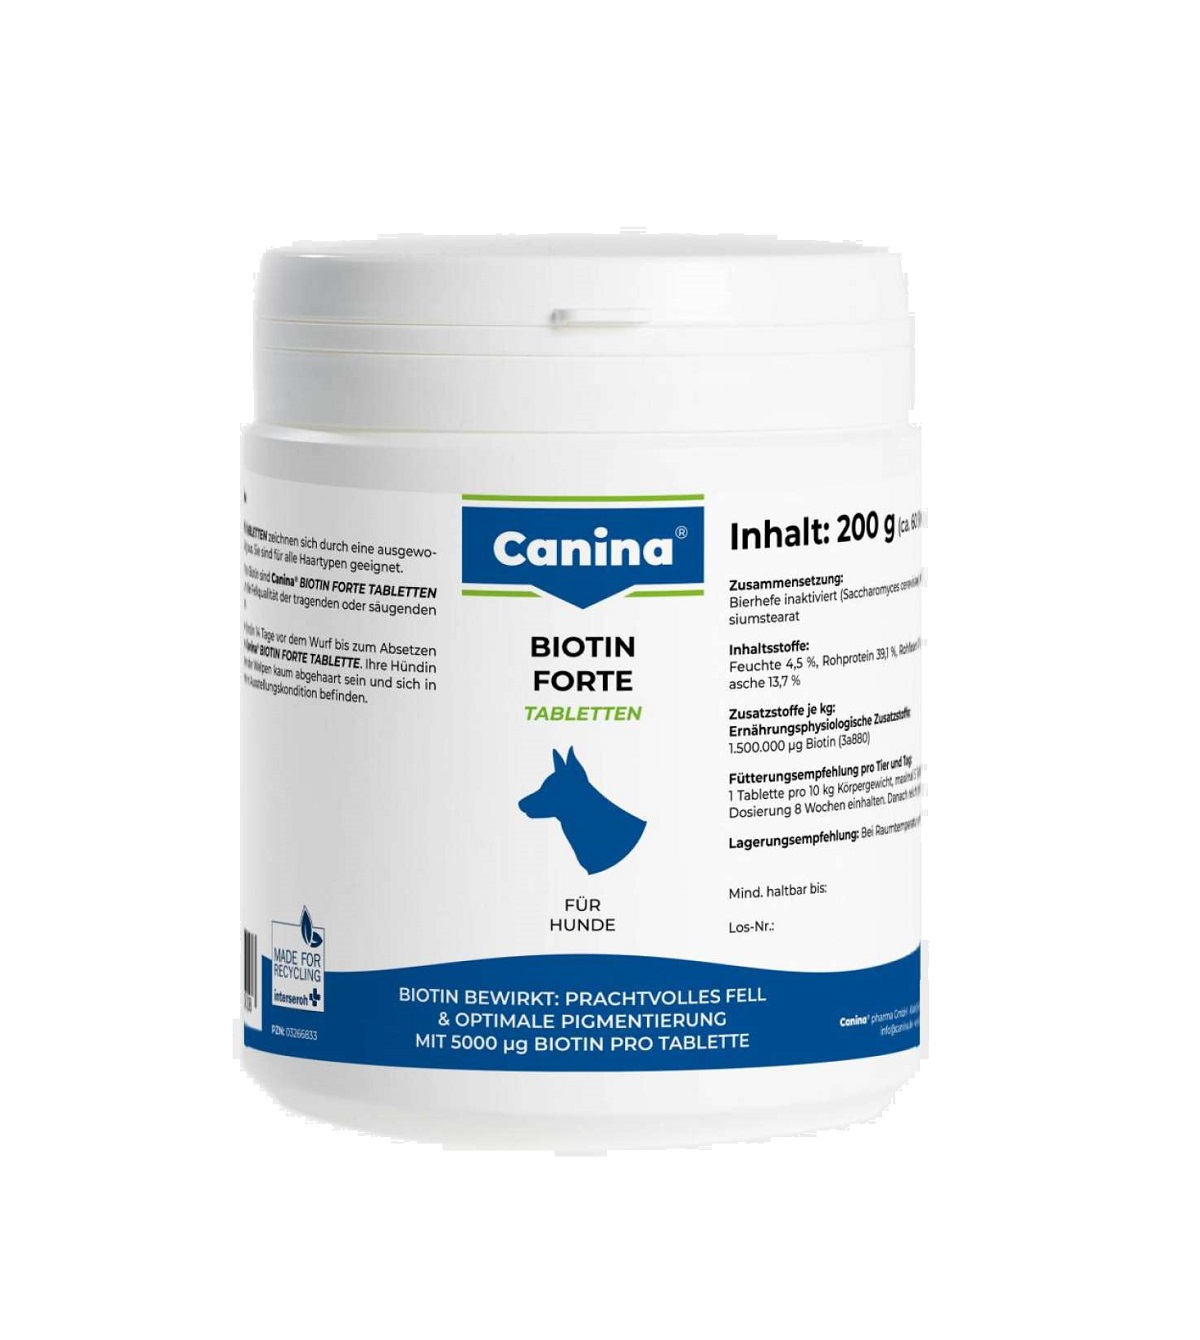 CANINA Biotin forte 60tbl.